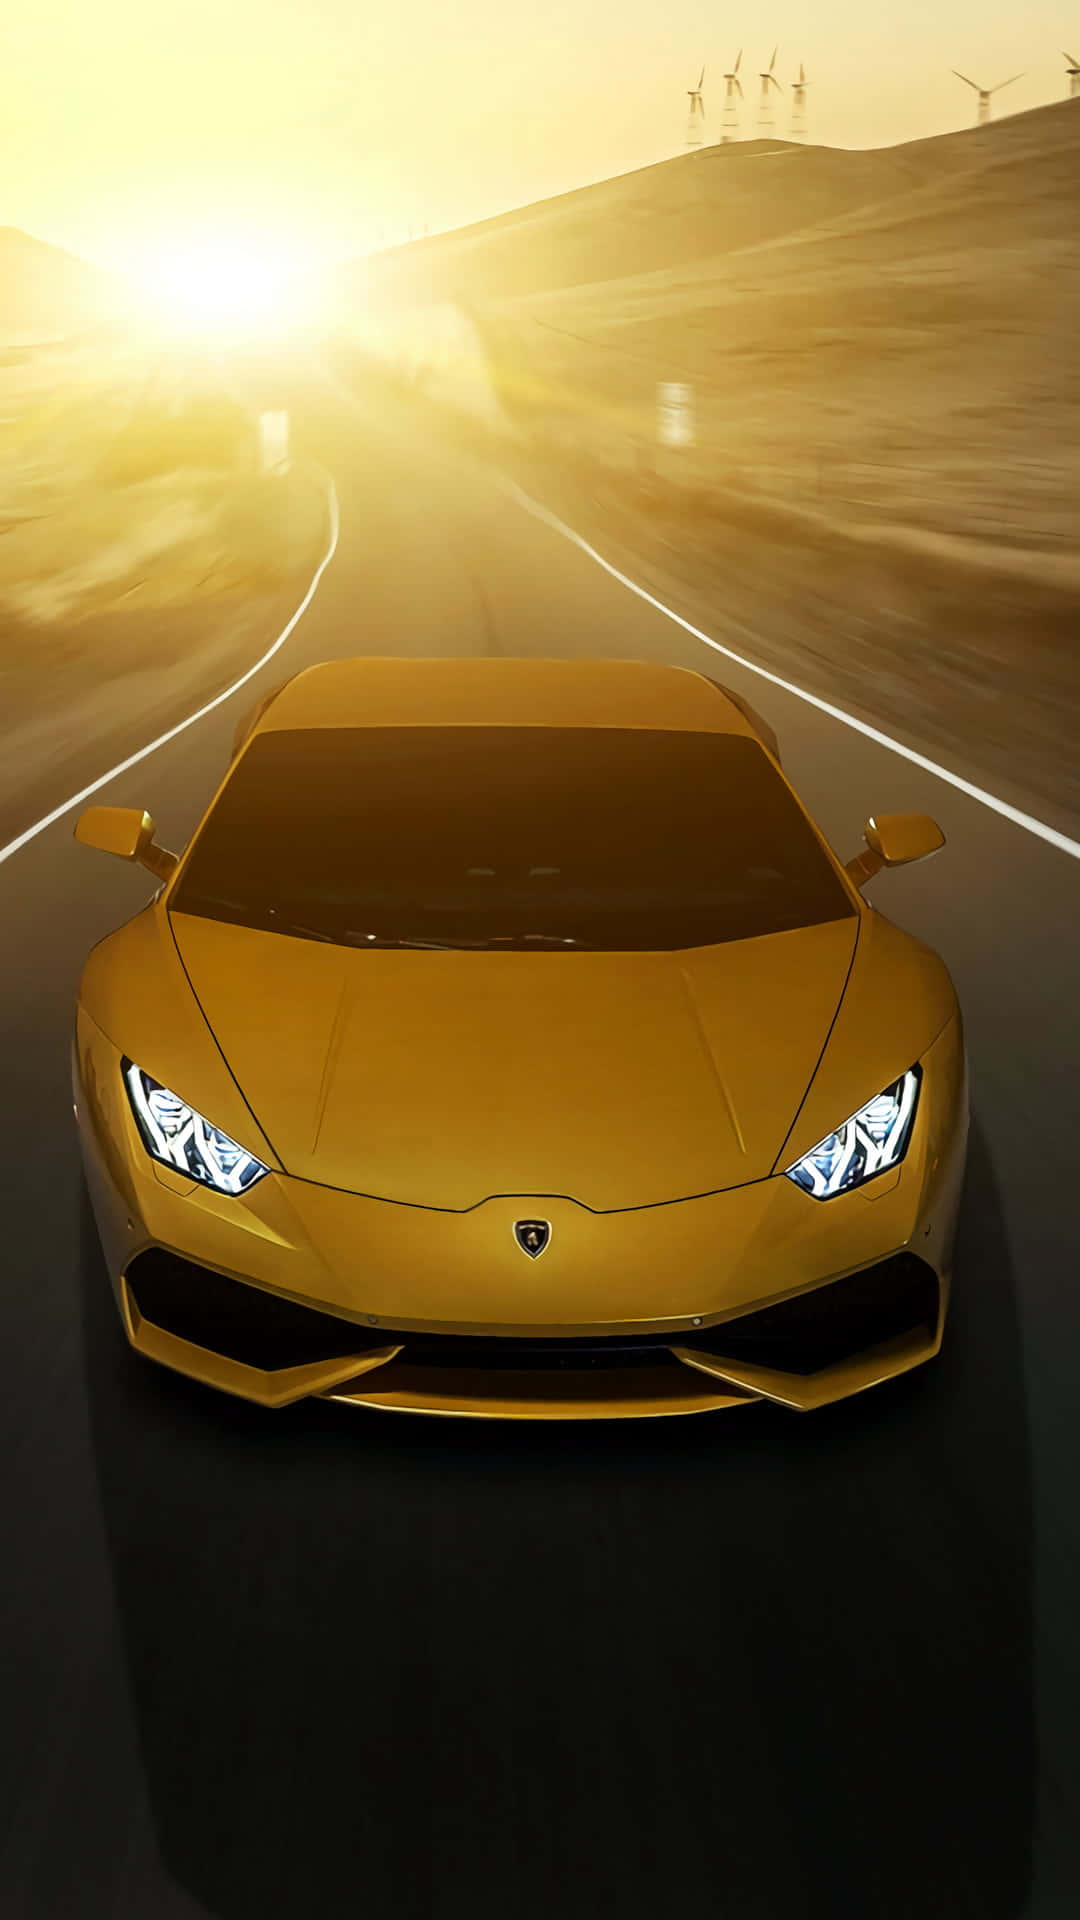 Endnu en sjælden syne, det guldbelagte Lamborghini løber hen over byen som lynet. Wallpaper